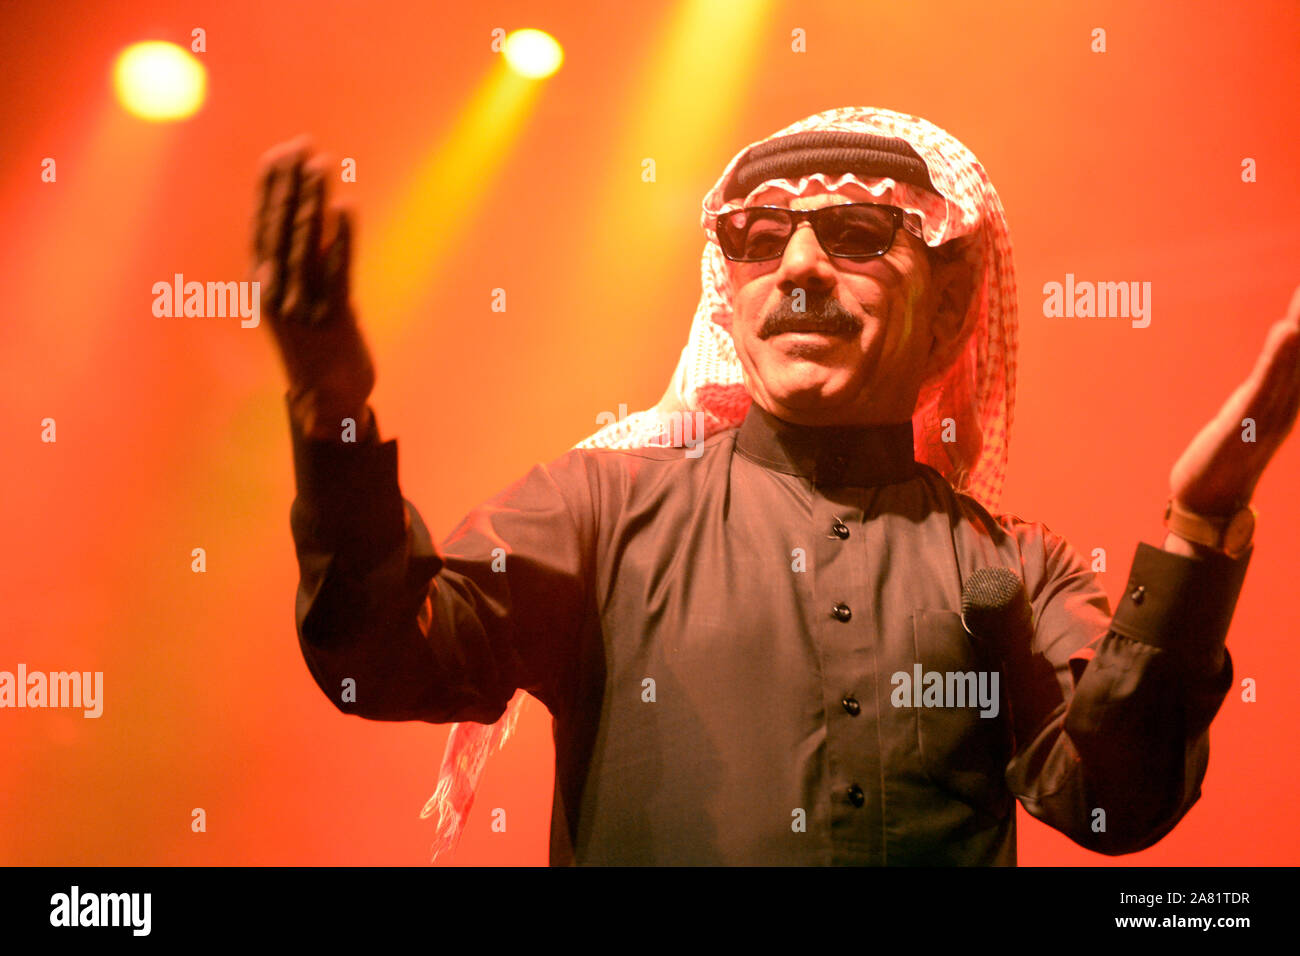 Cantante sirio Omar Souleyman interpretando en vivo. Foto de stock